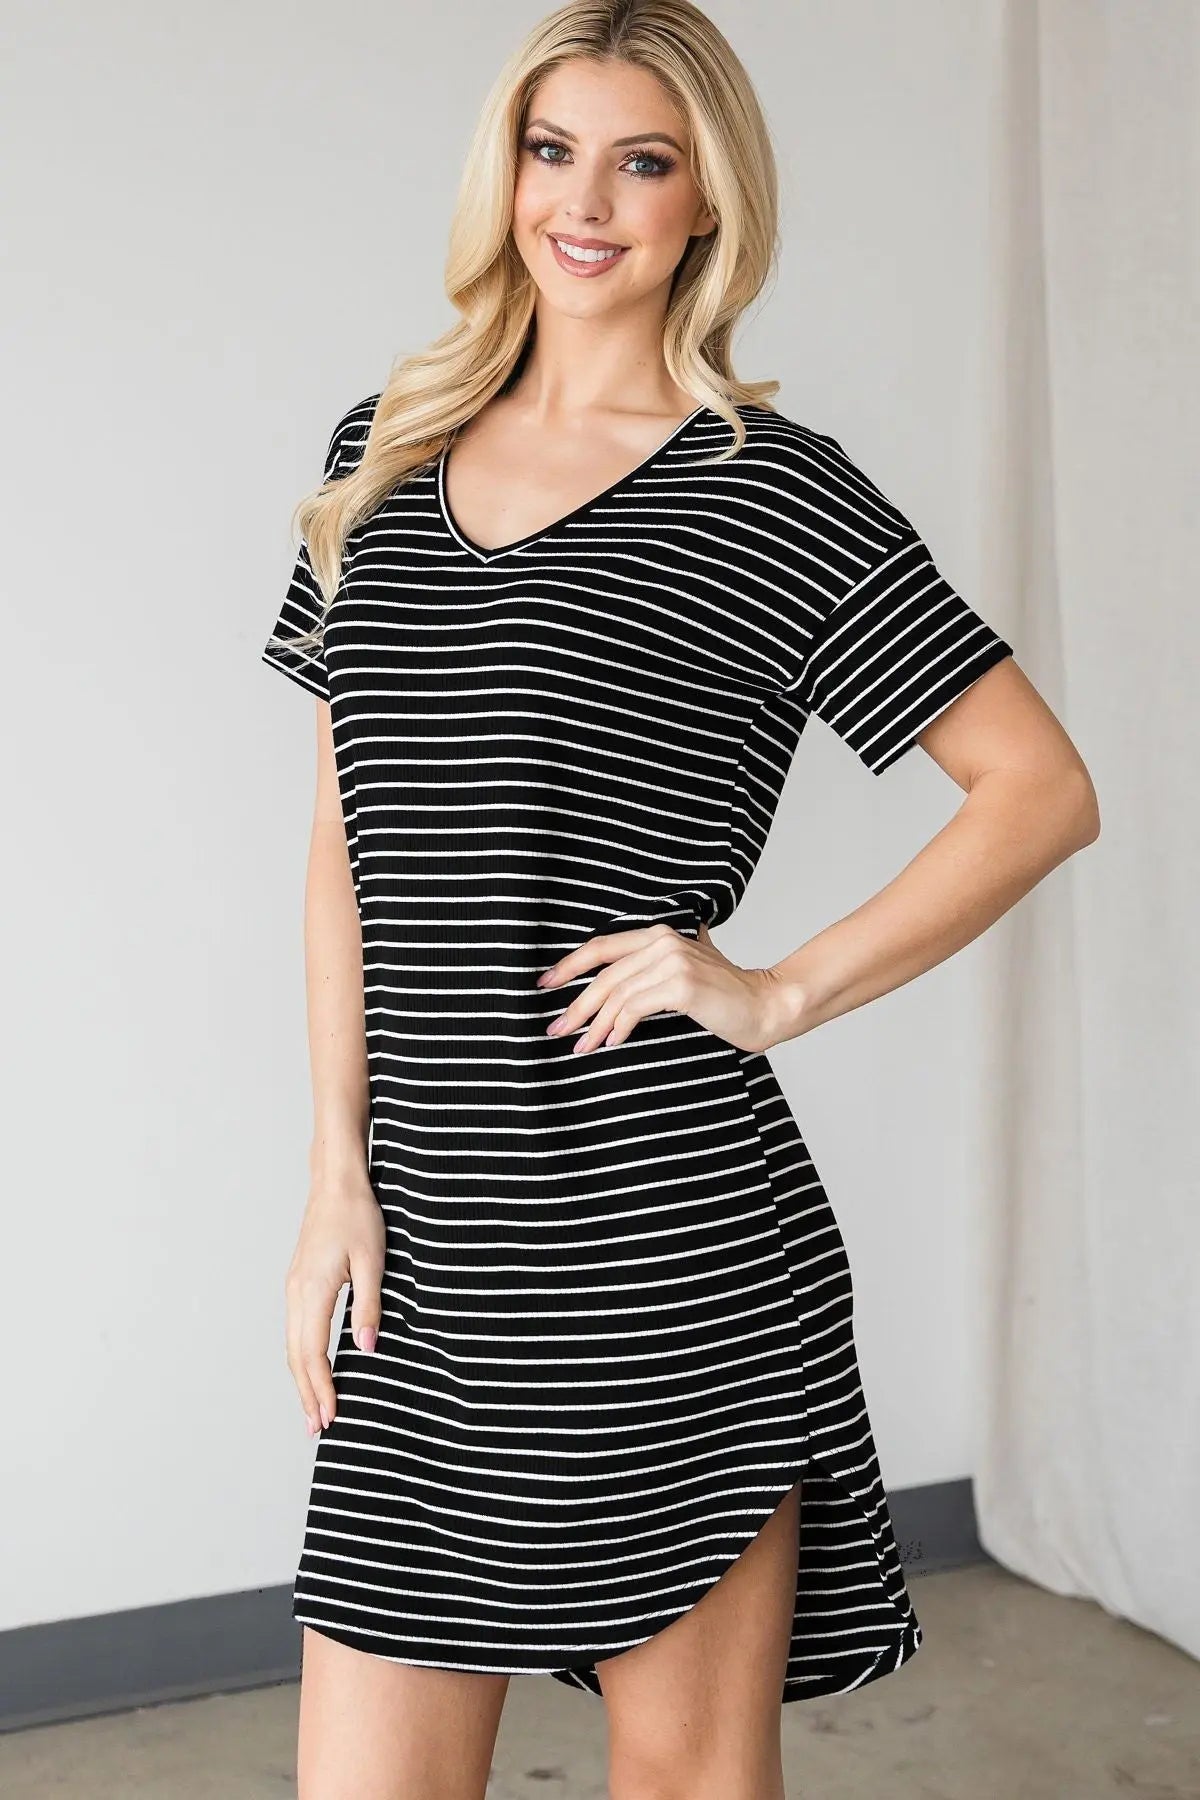 Adorable Striped Mini Dress Sunny EvE Fashion